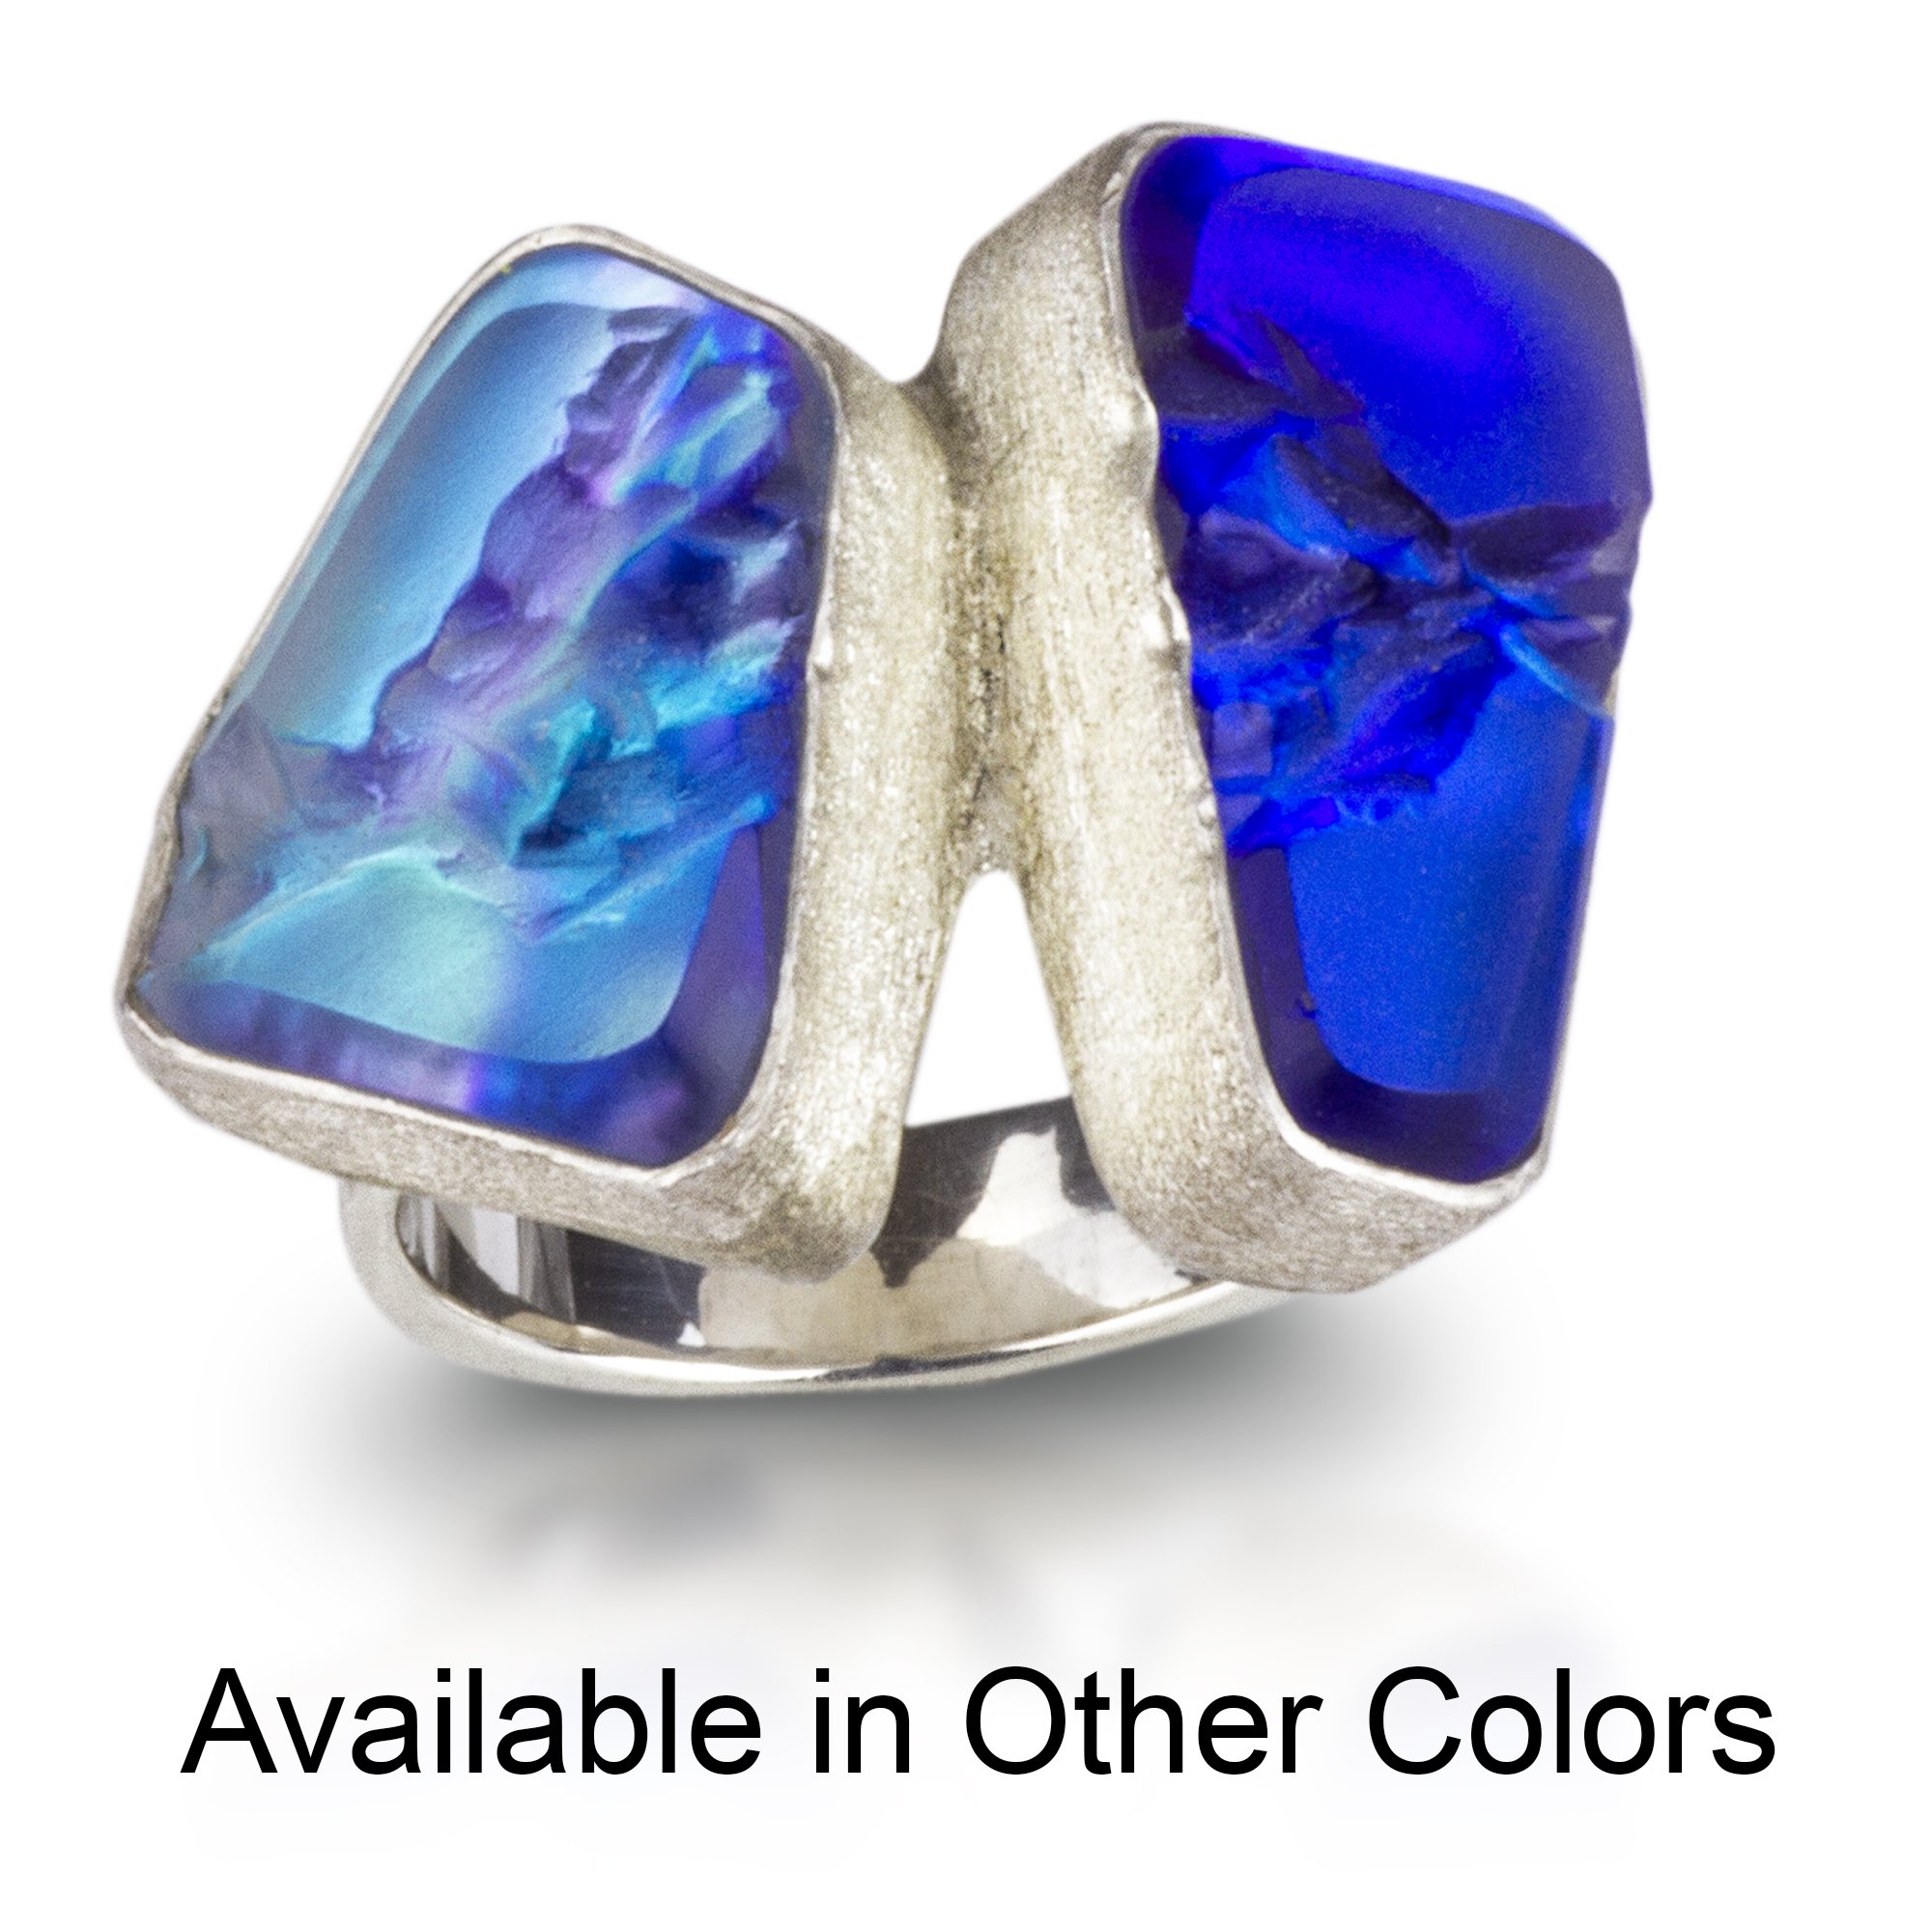 Debra Adelson Jewelry - Debra Adelson Jewelry-Luminous Glass Jewelry